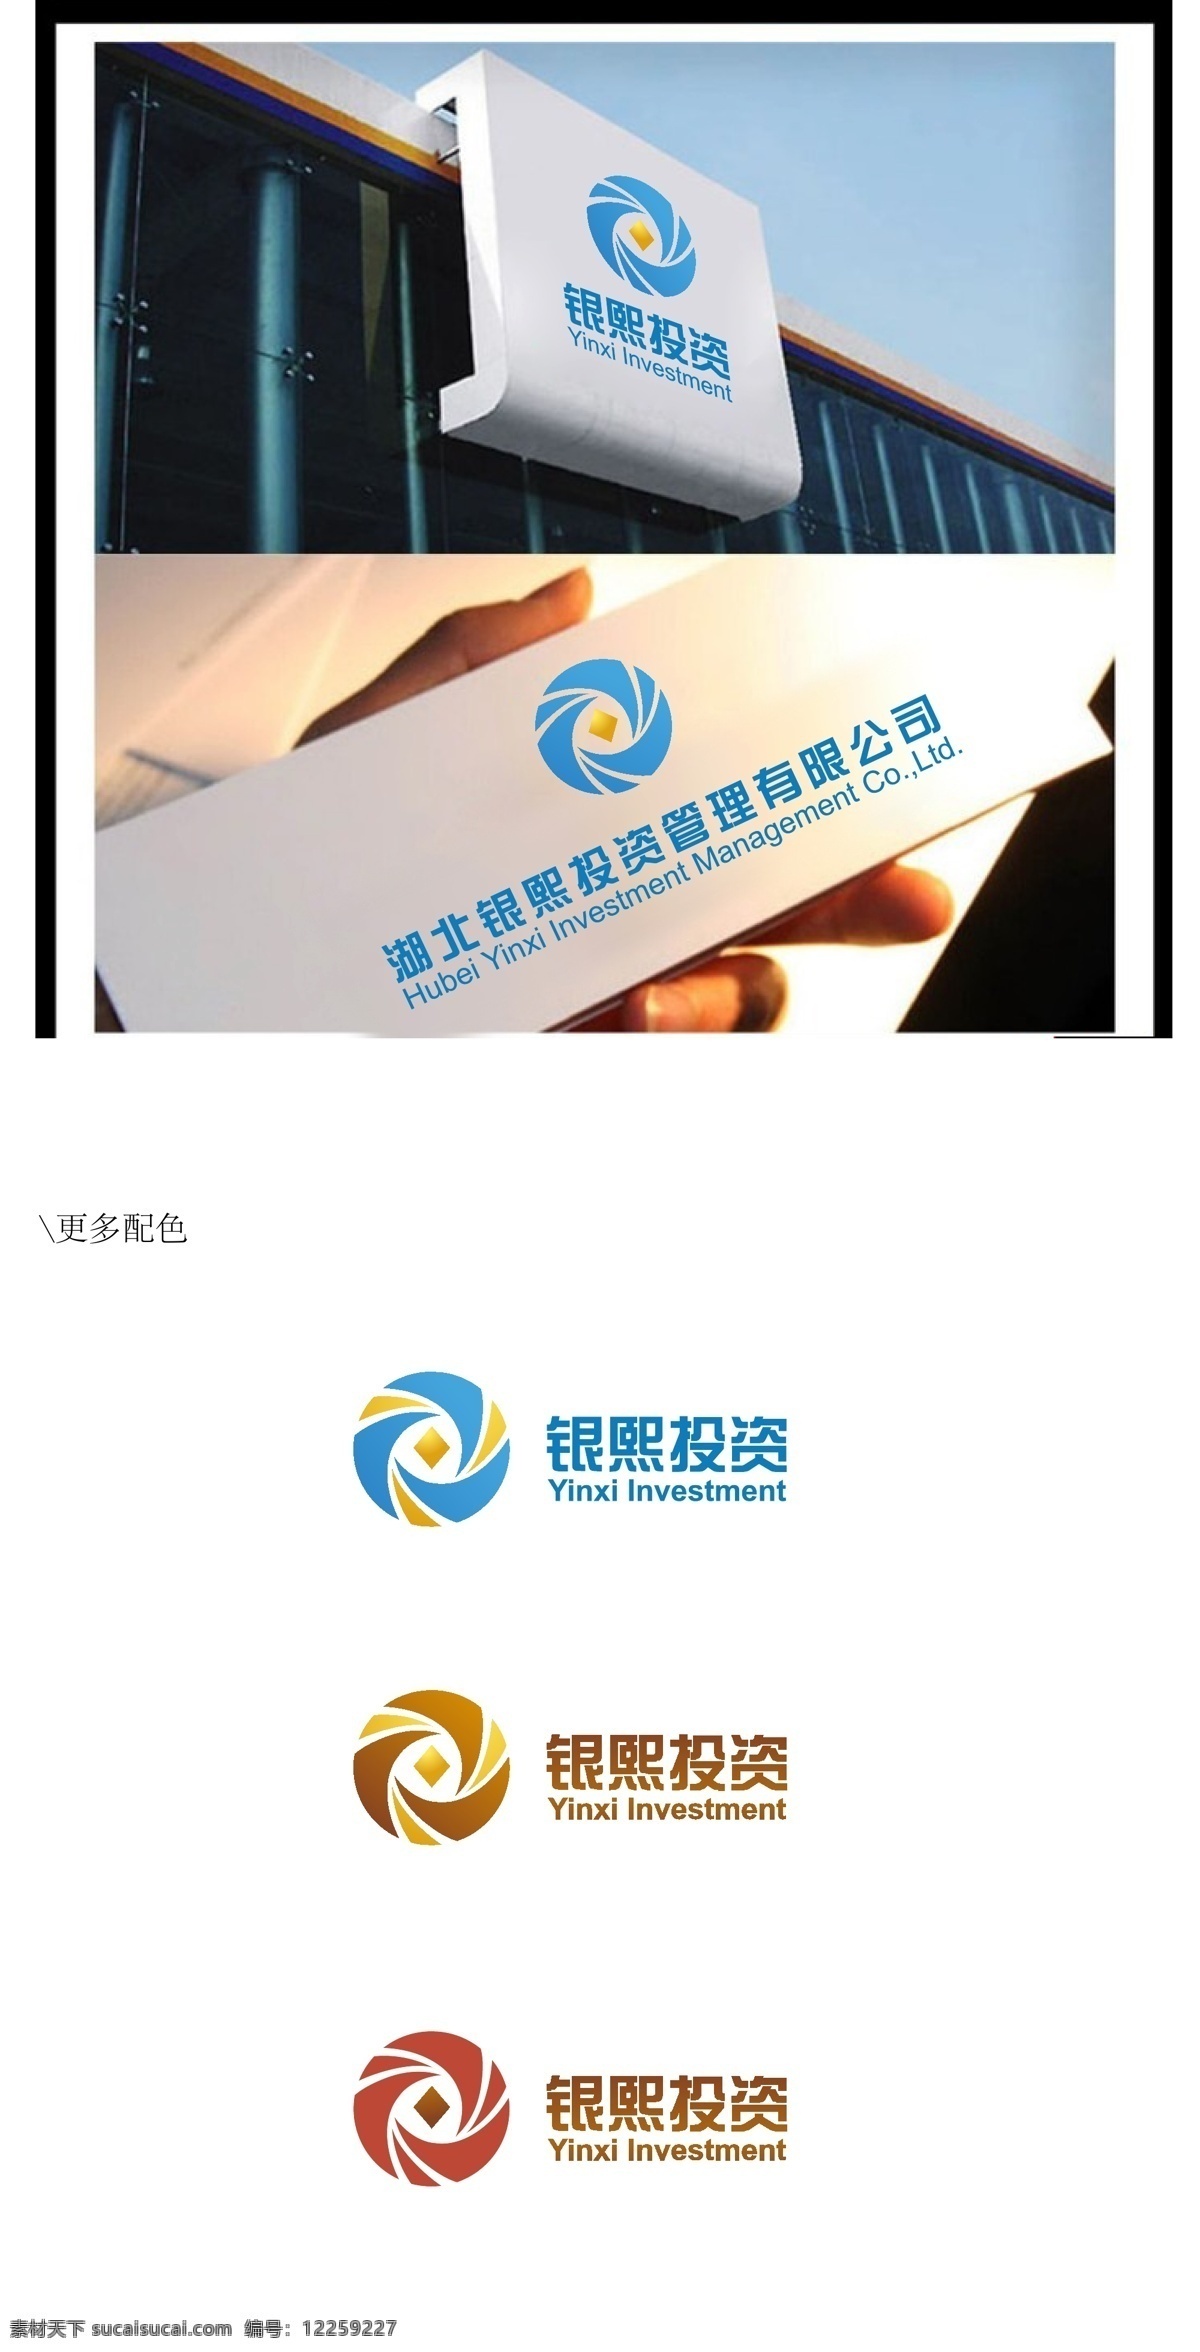 企业 logo vi 标识标志图标 金融 企业logo 标志 投资 投资公司 矢量 psd源文件 logo设计